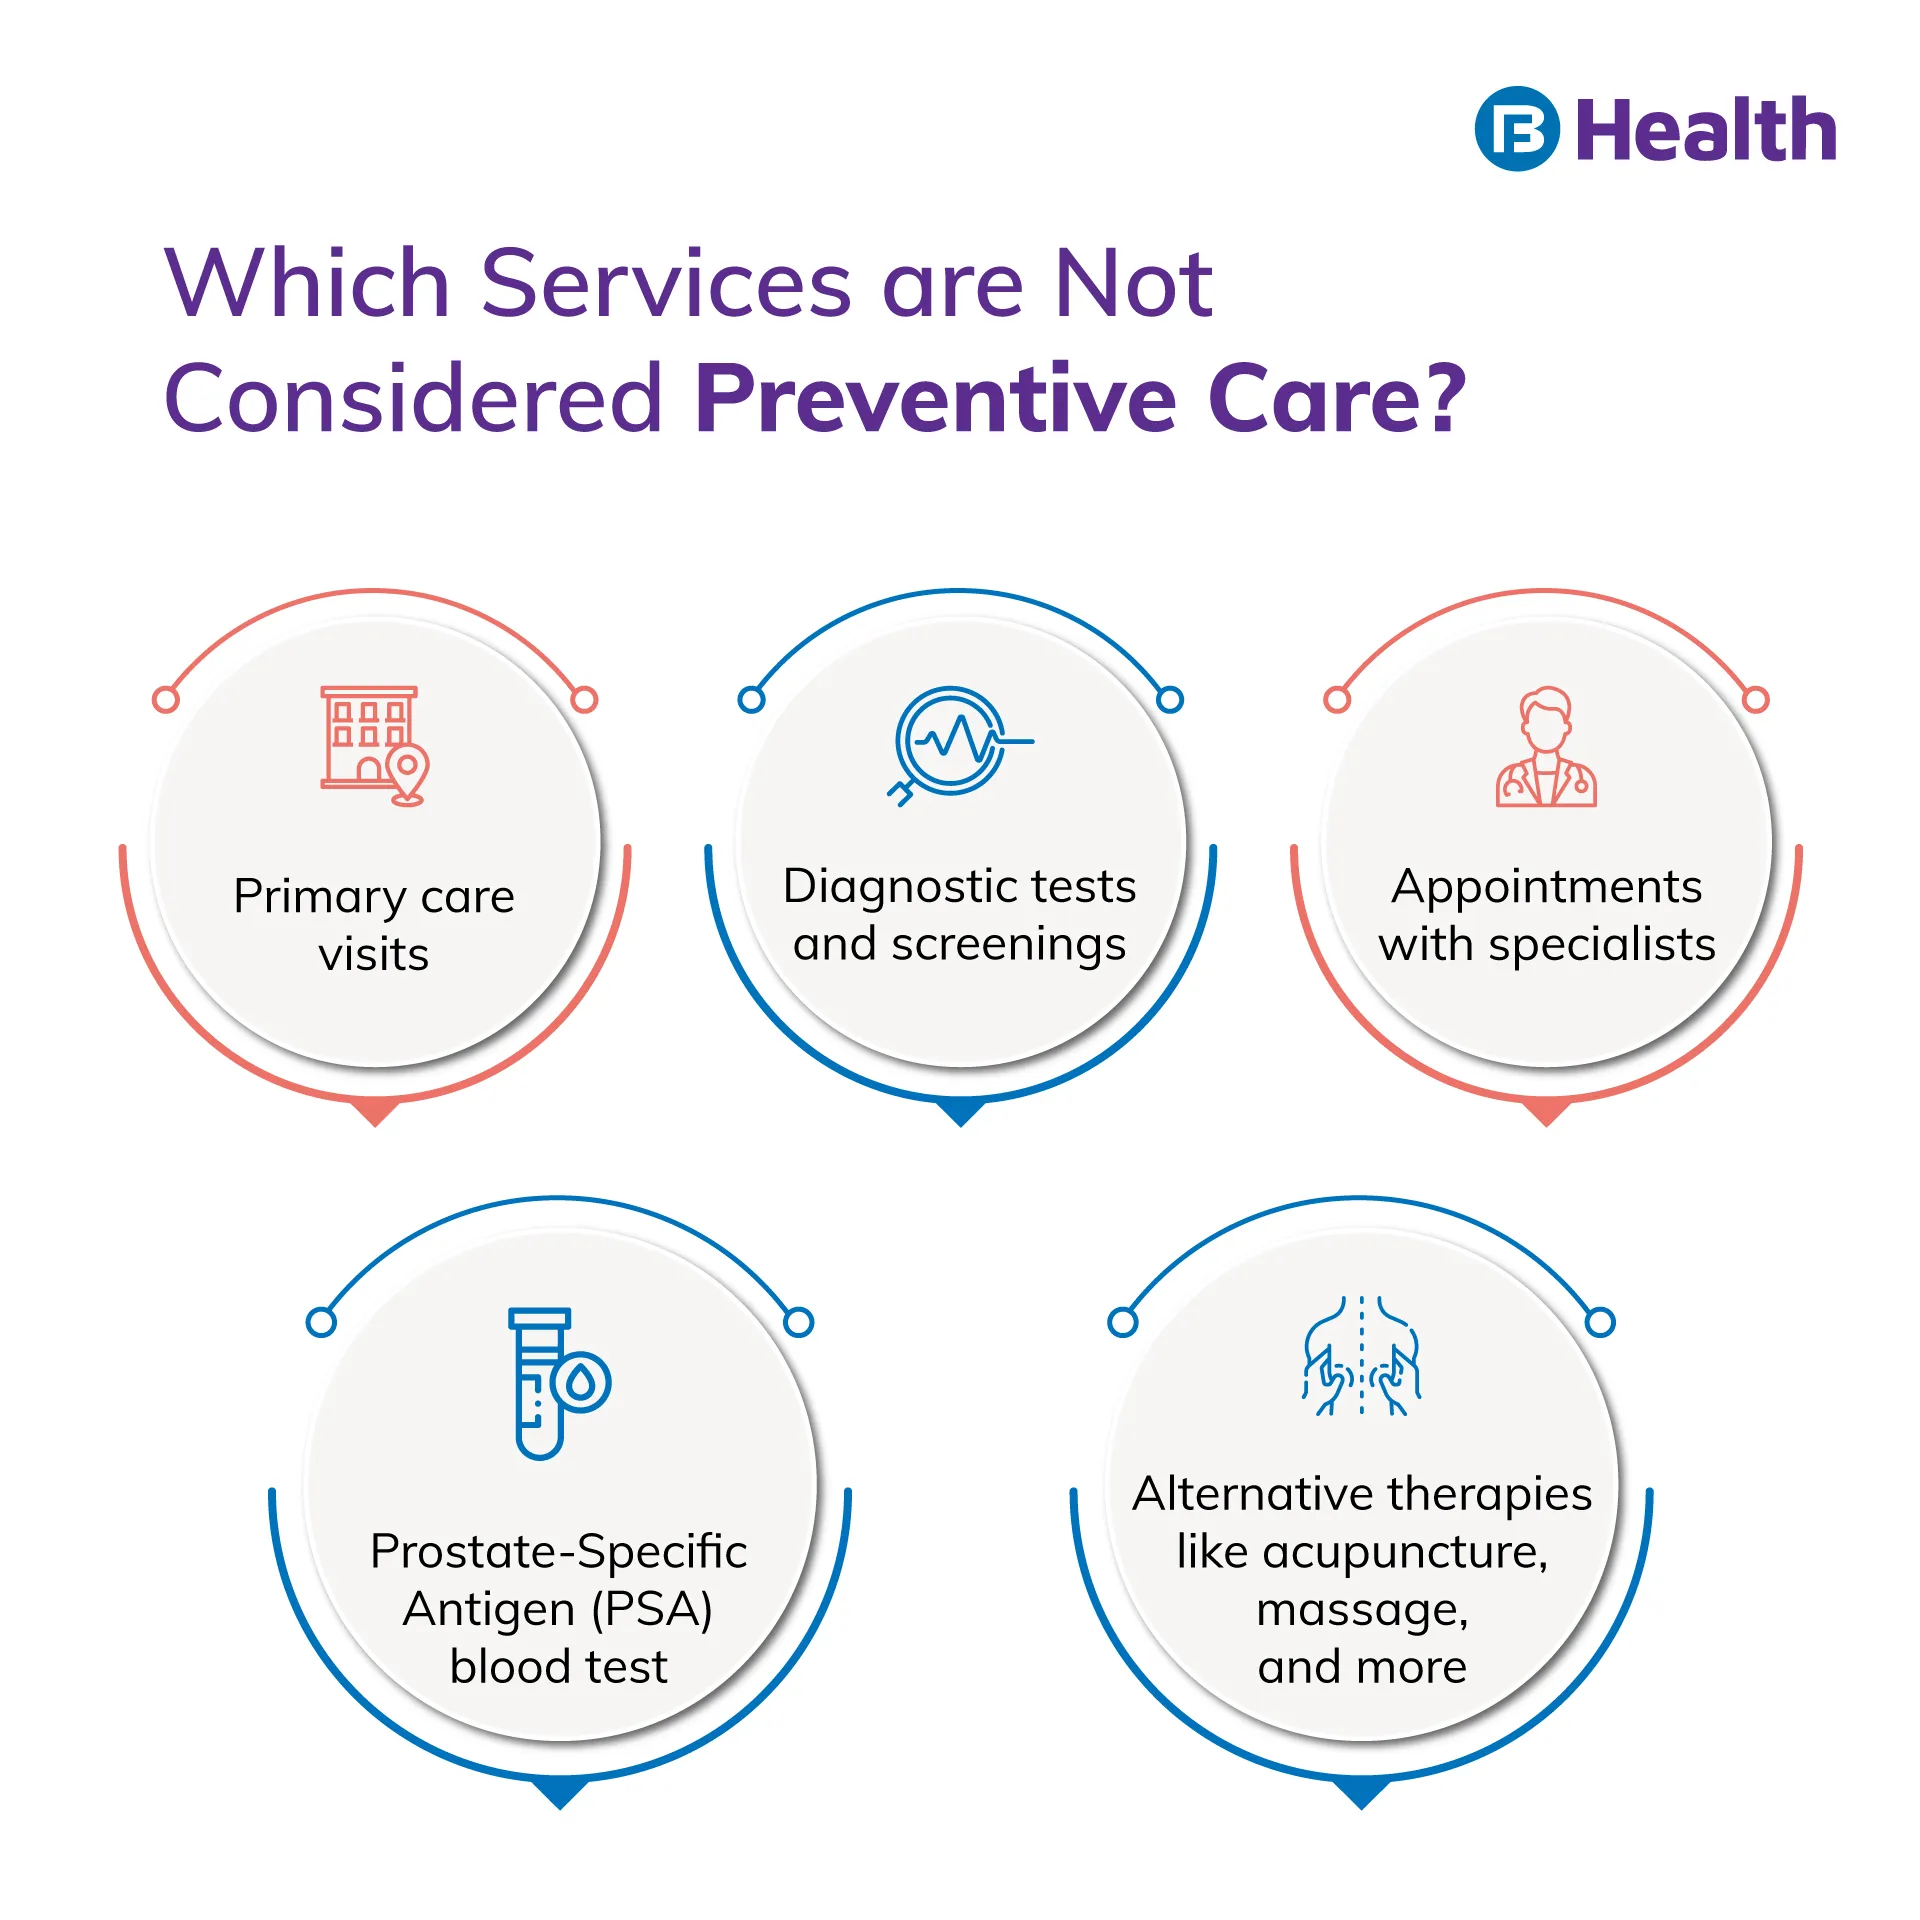 Services not in Preventive Care